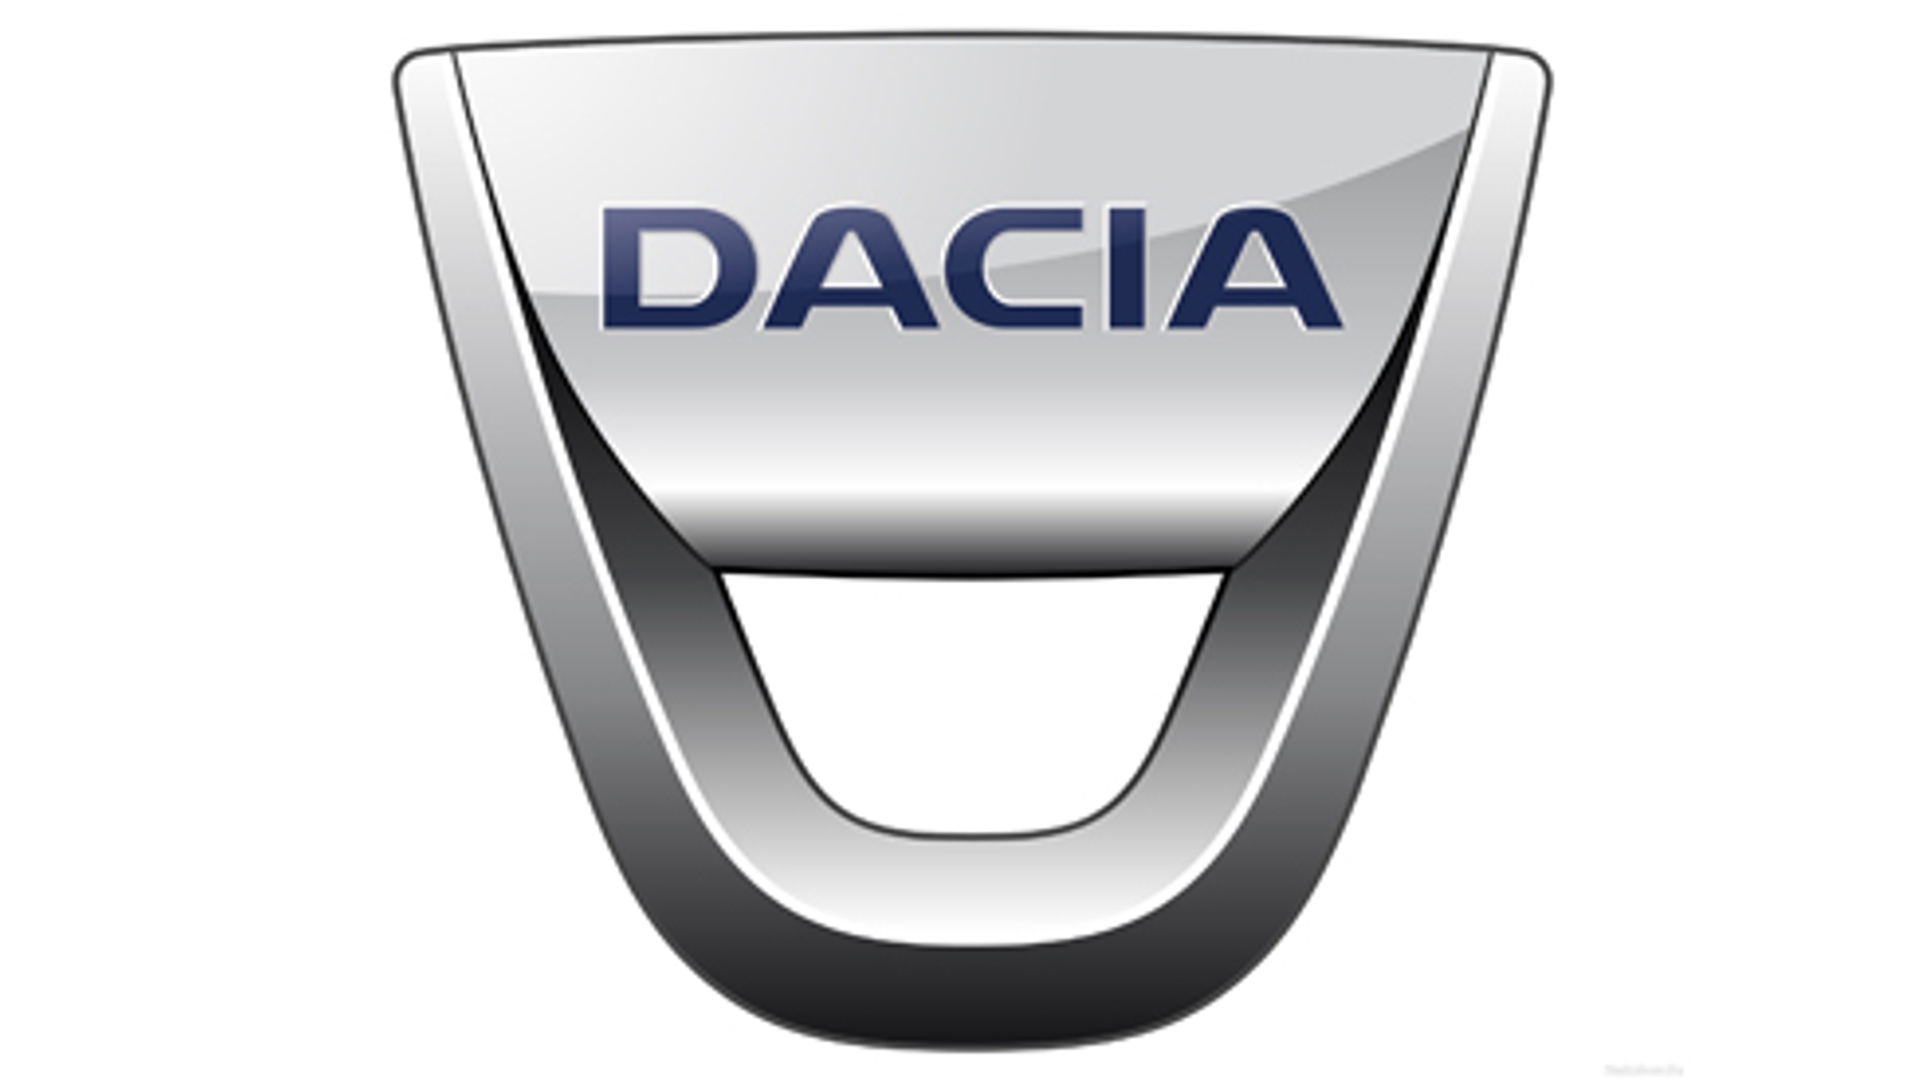 Dacia_t.jpg